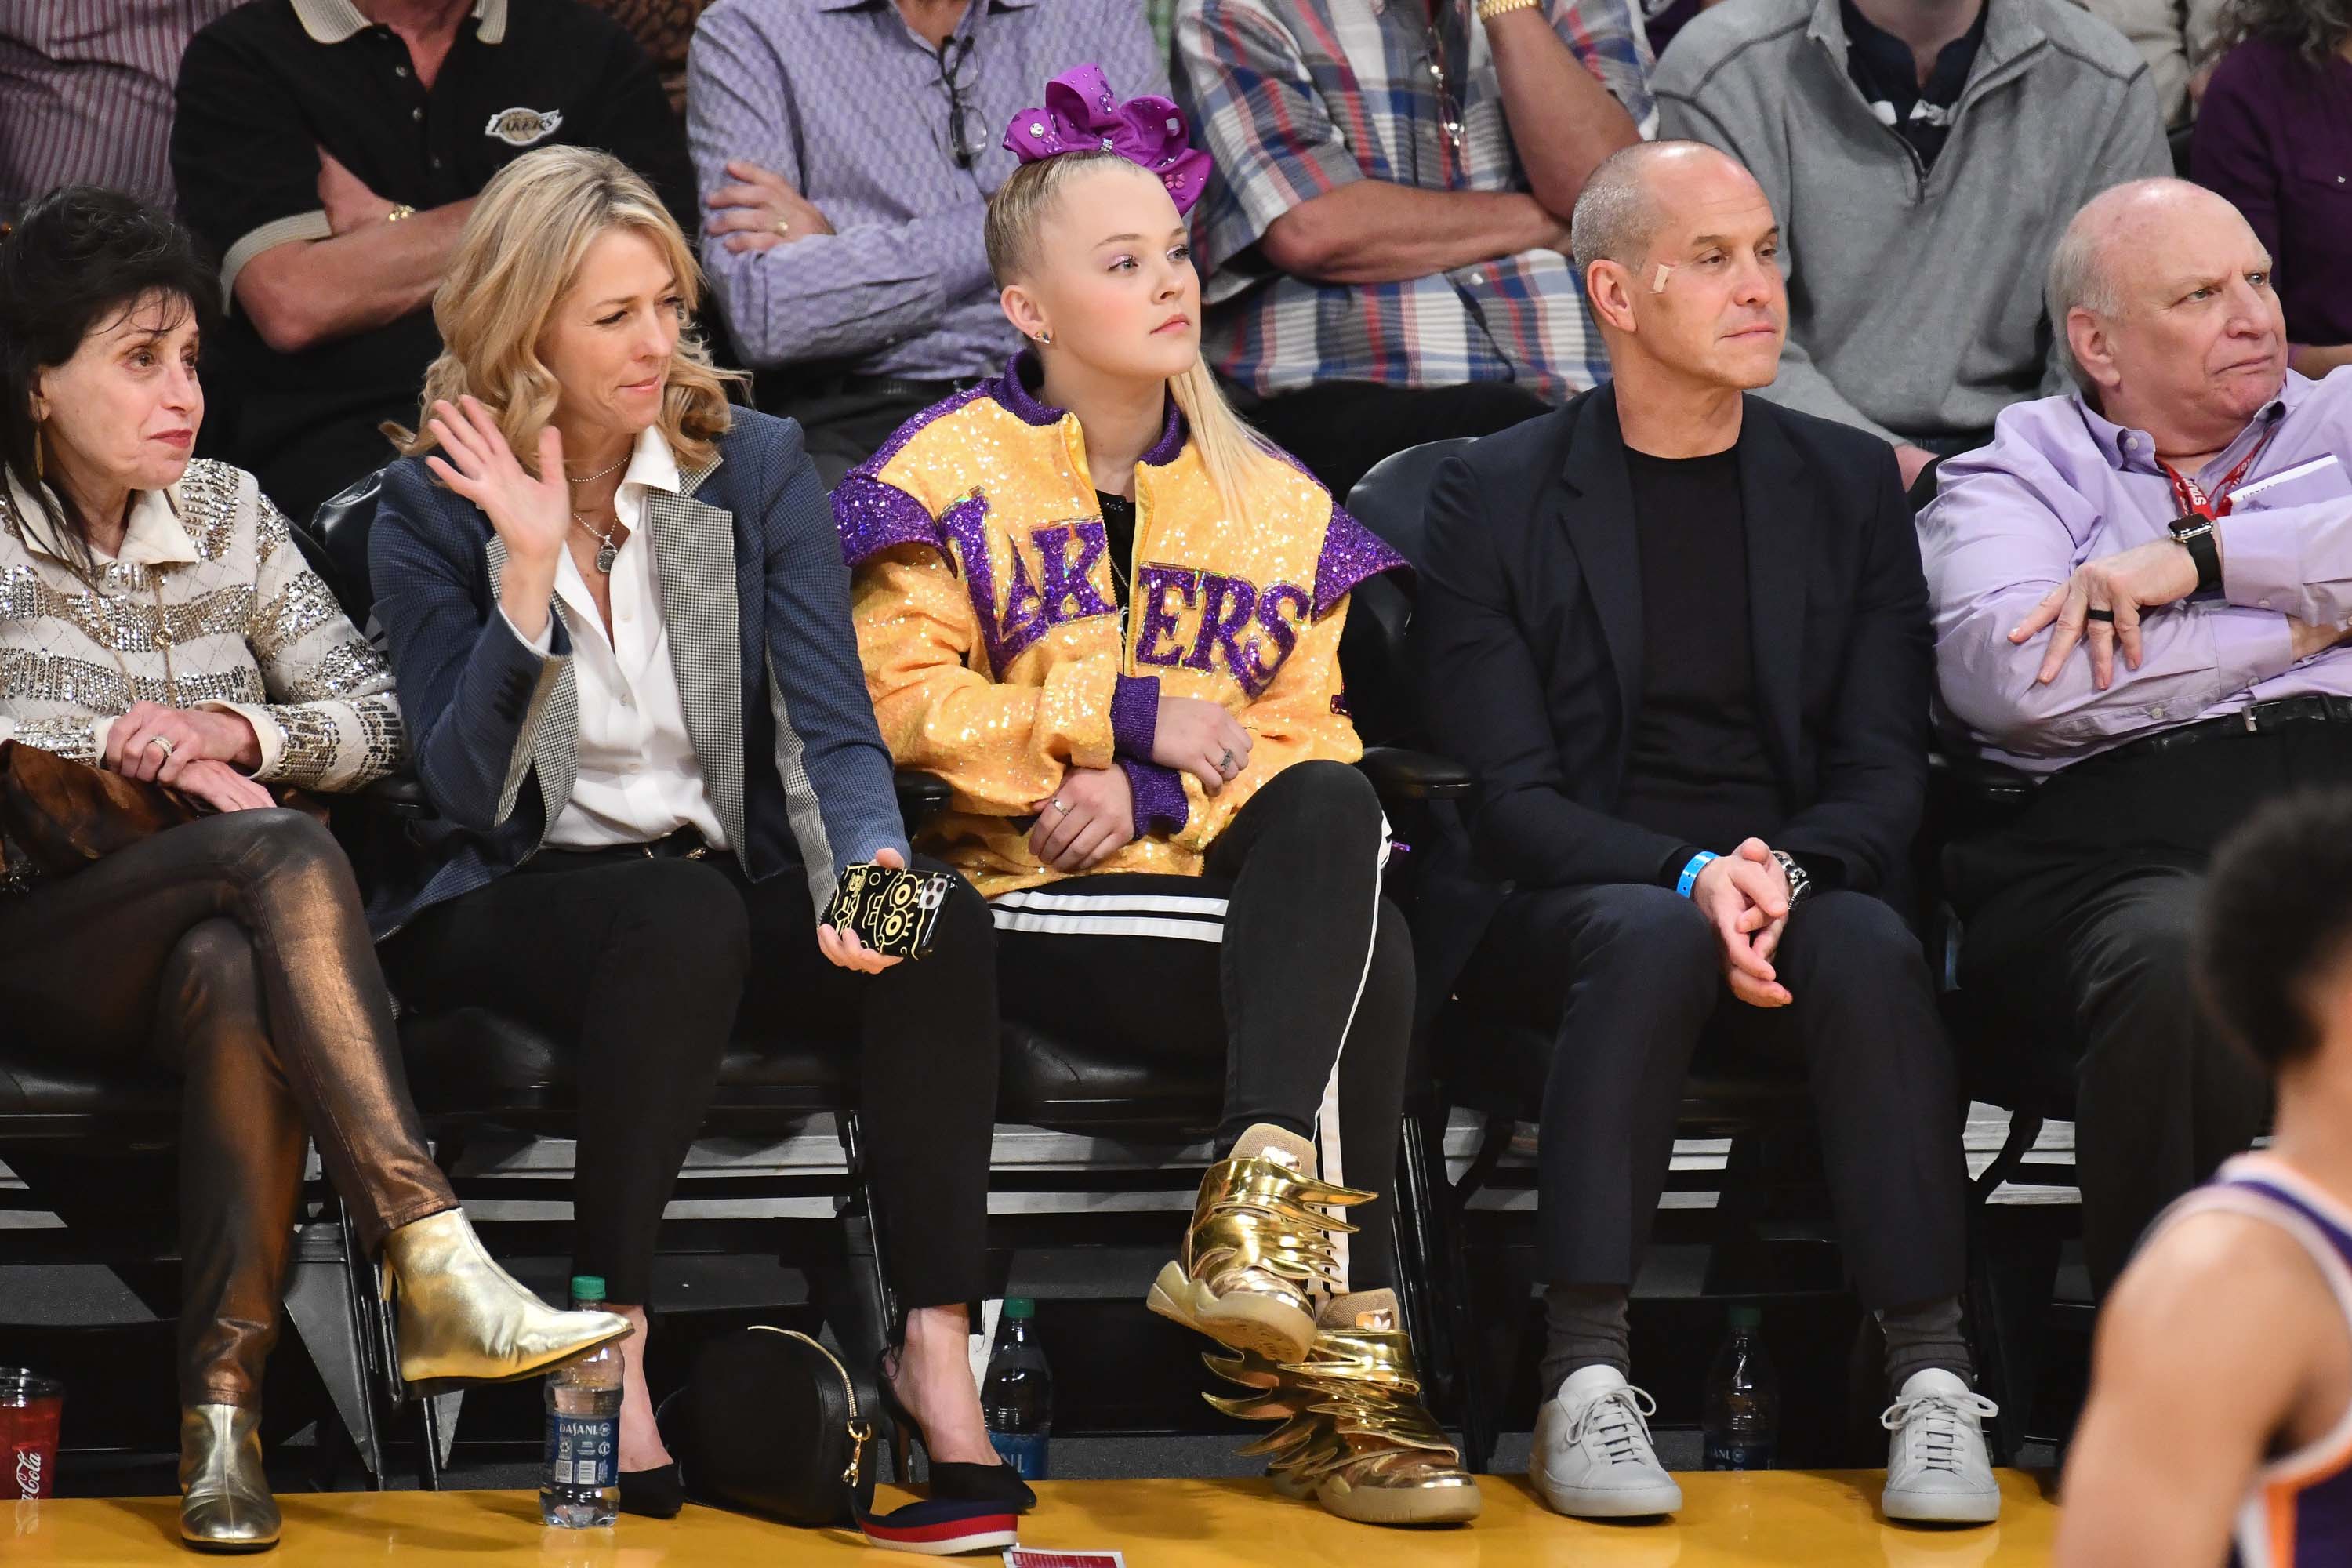 Rihanna and Floyd Mayweather watch LA Lakers courtside